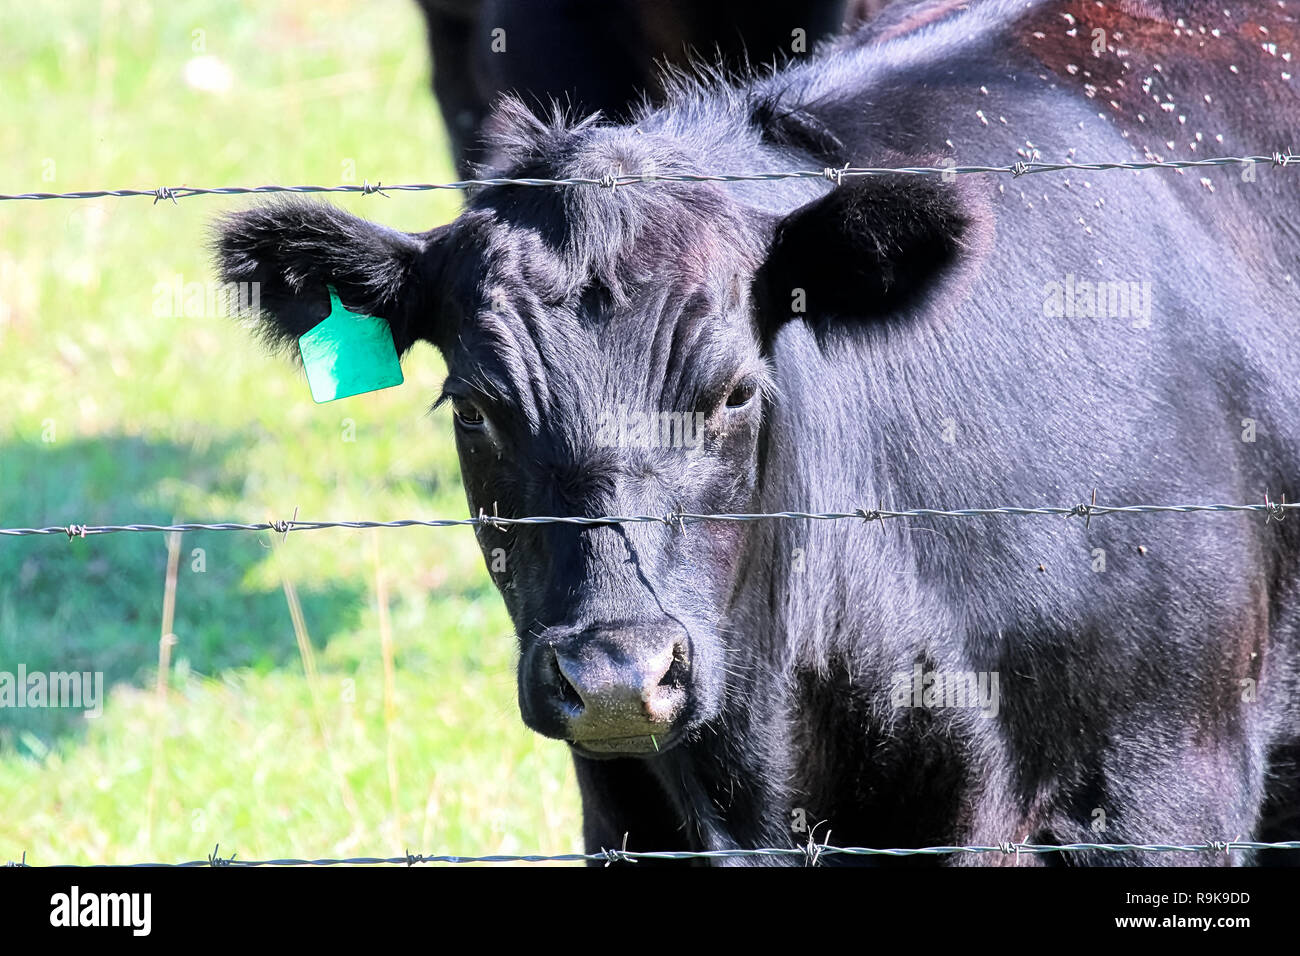 Un negro mirando a través de una vaca a través de una valla de alambre Foto de stock